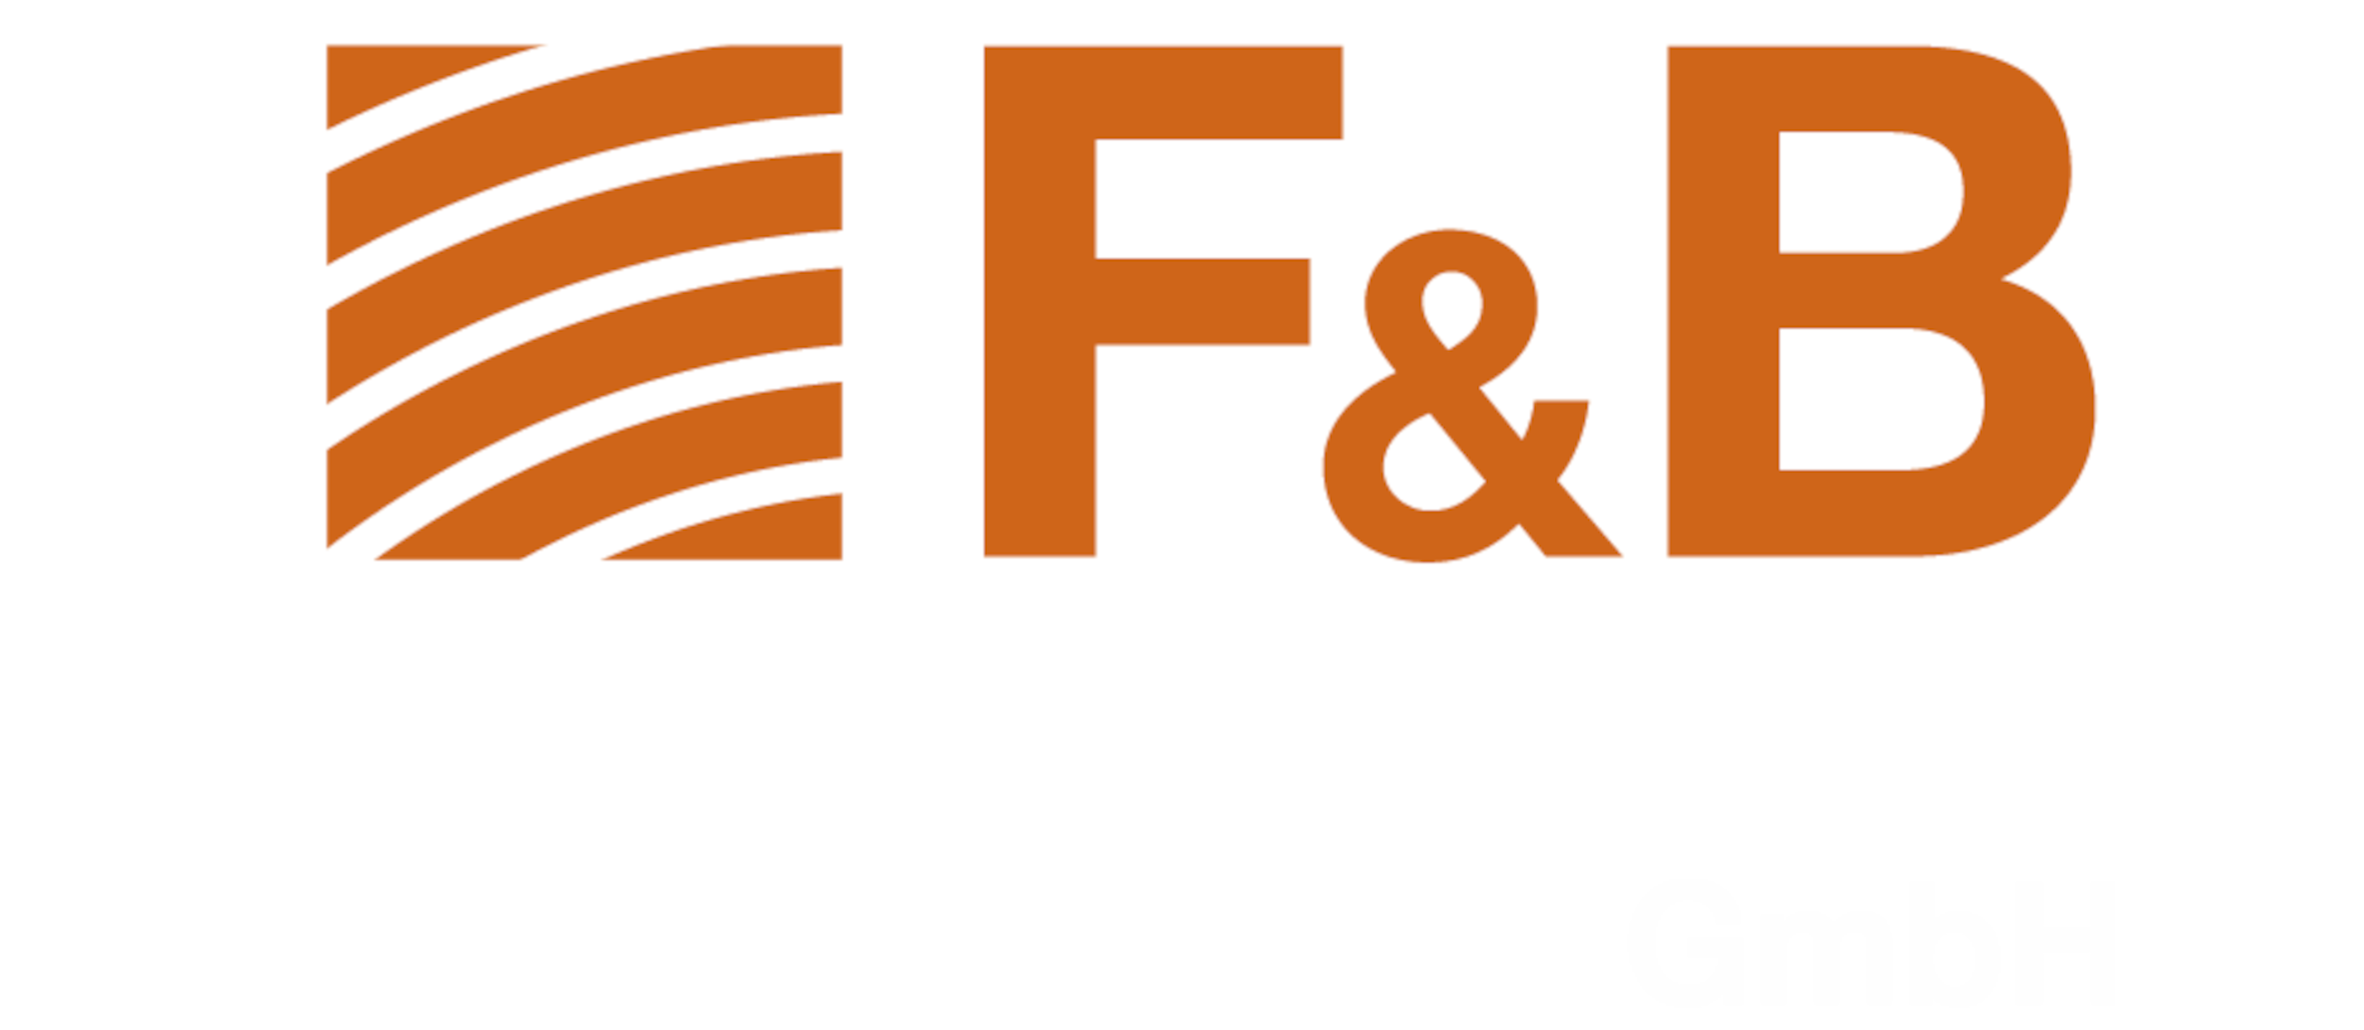 F&B Putzsysteme GmbH